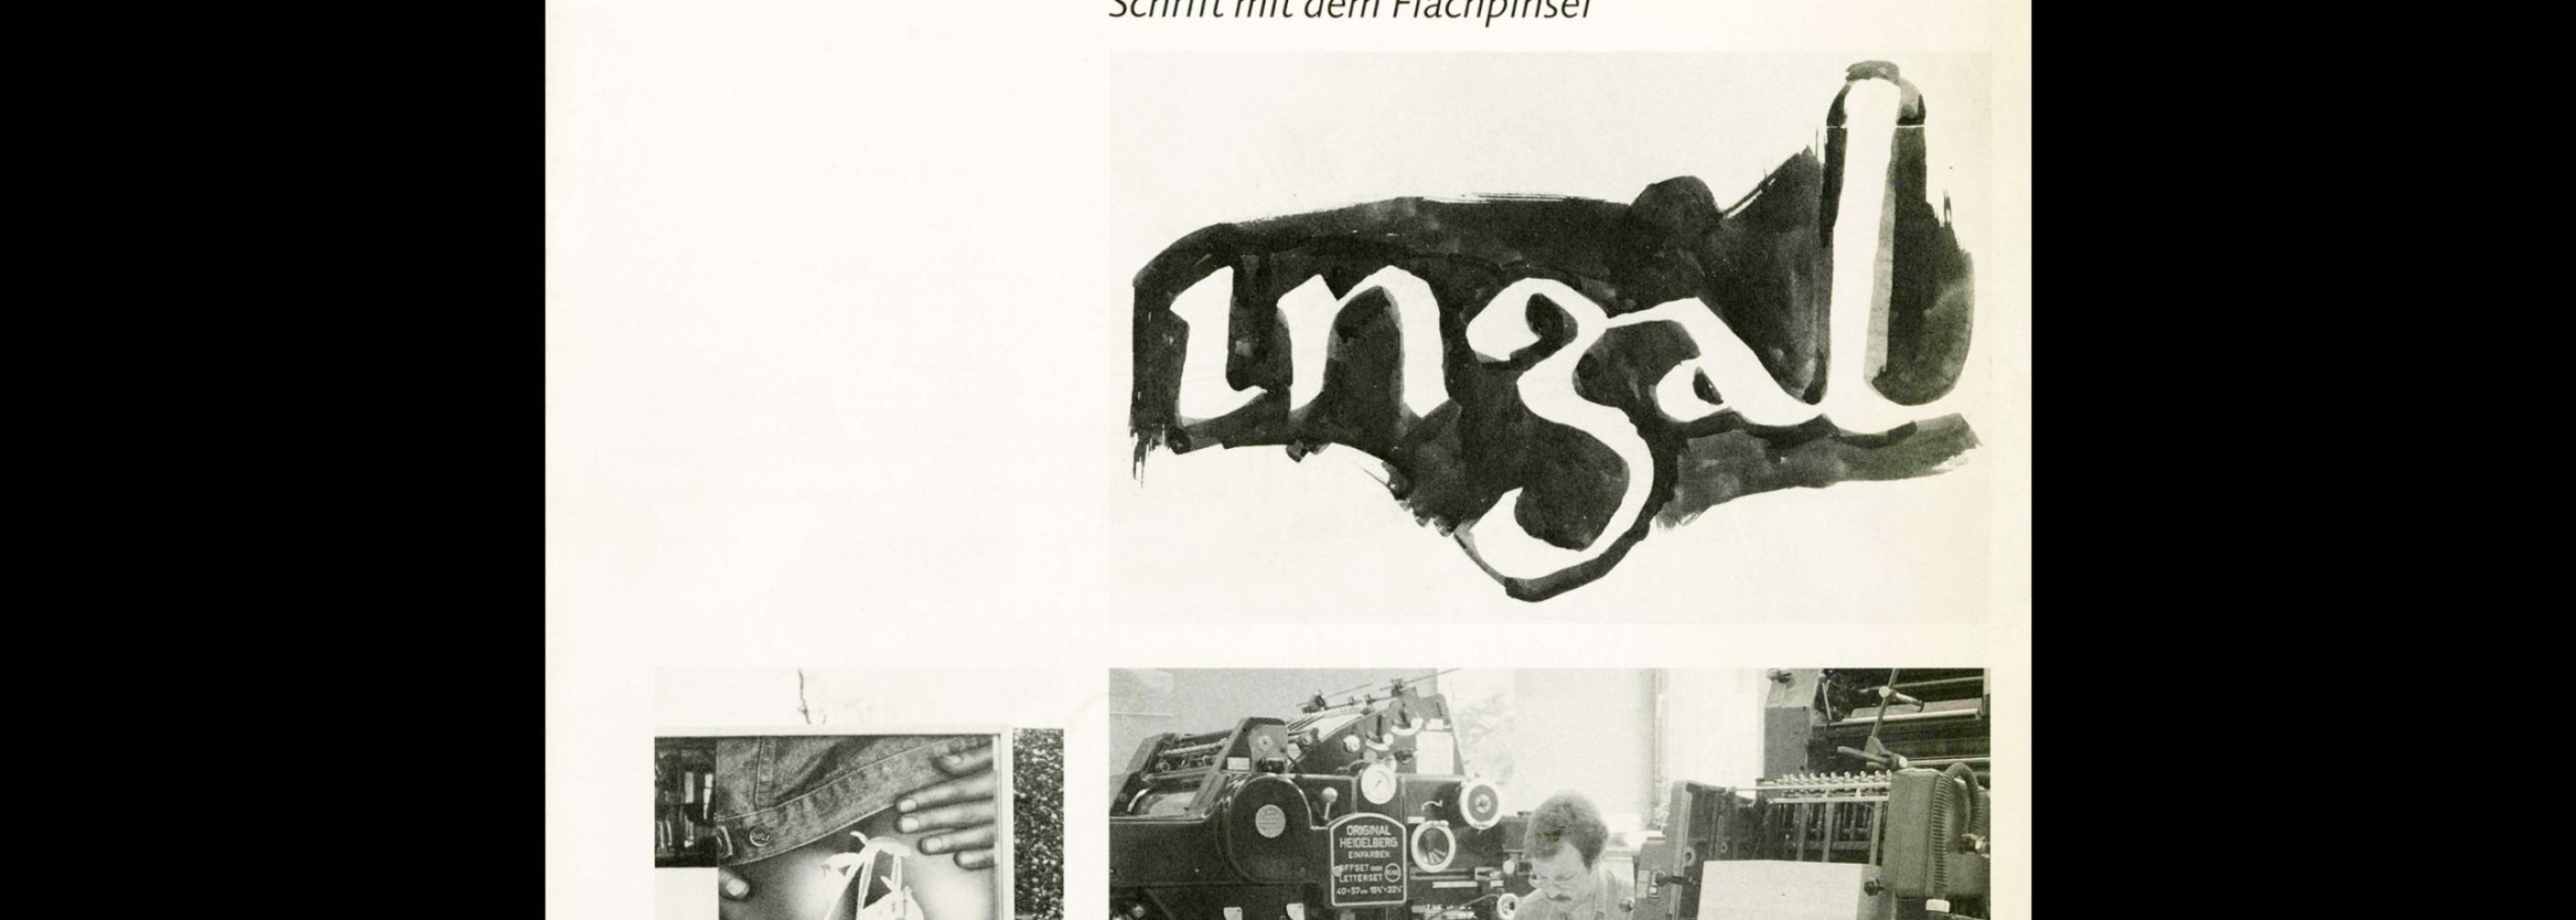 Typografische Monatsblätter, 1, 1983. Cover design by Jean-Pierre Graber